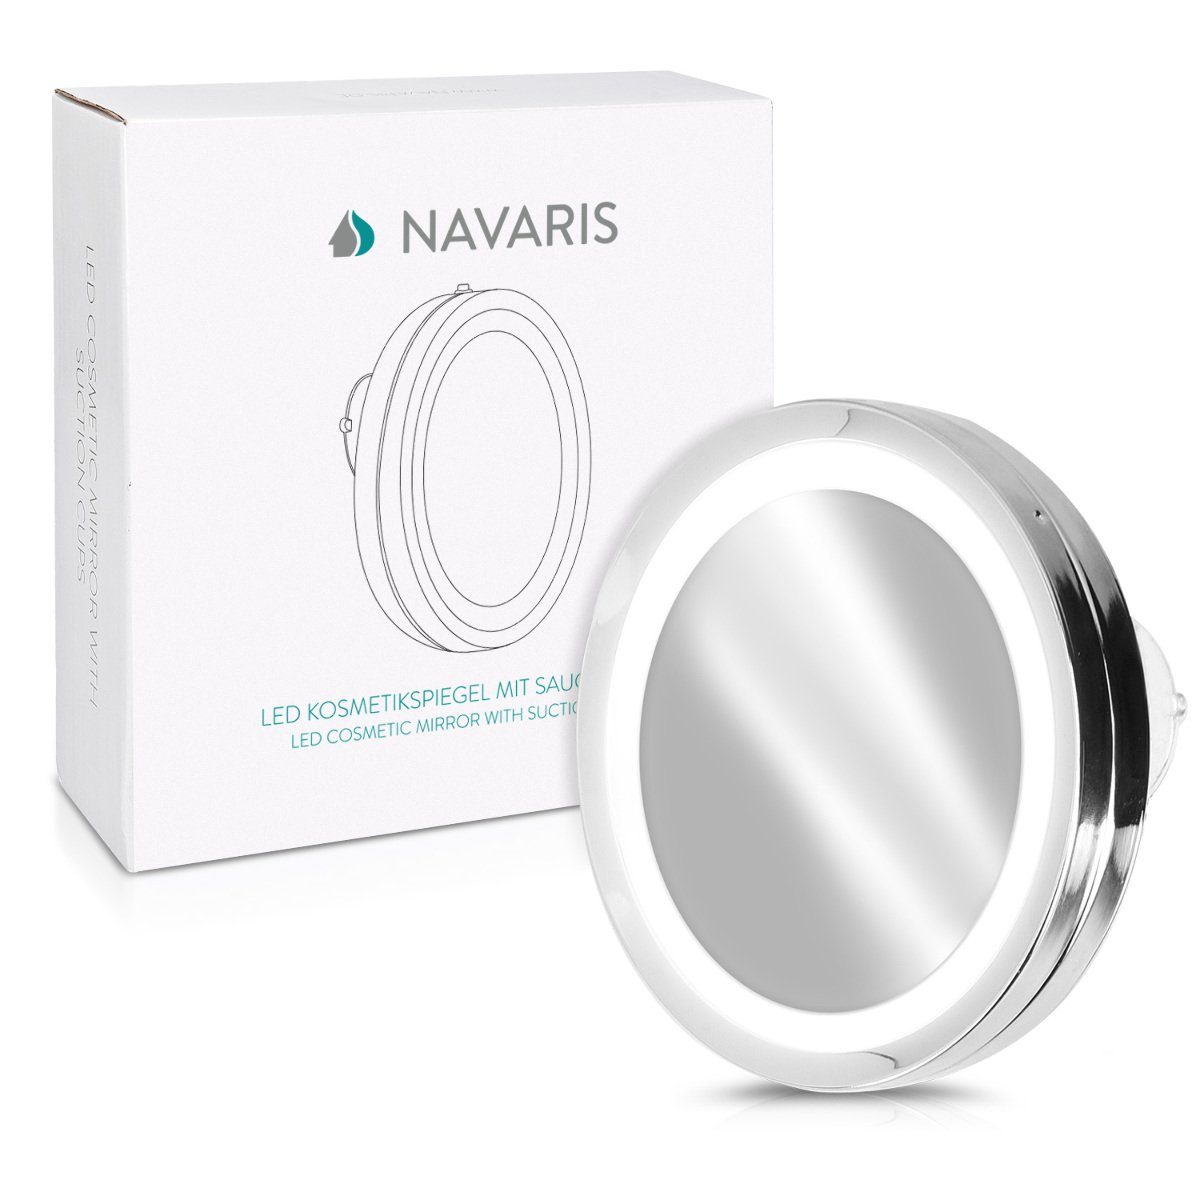 Beleuchtung 5-fach Kosmetikspiegel Vergrößerungsspiegel Navaris - LED Saugnapf Vergrößerung Silber